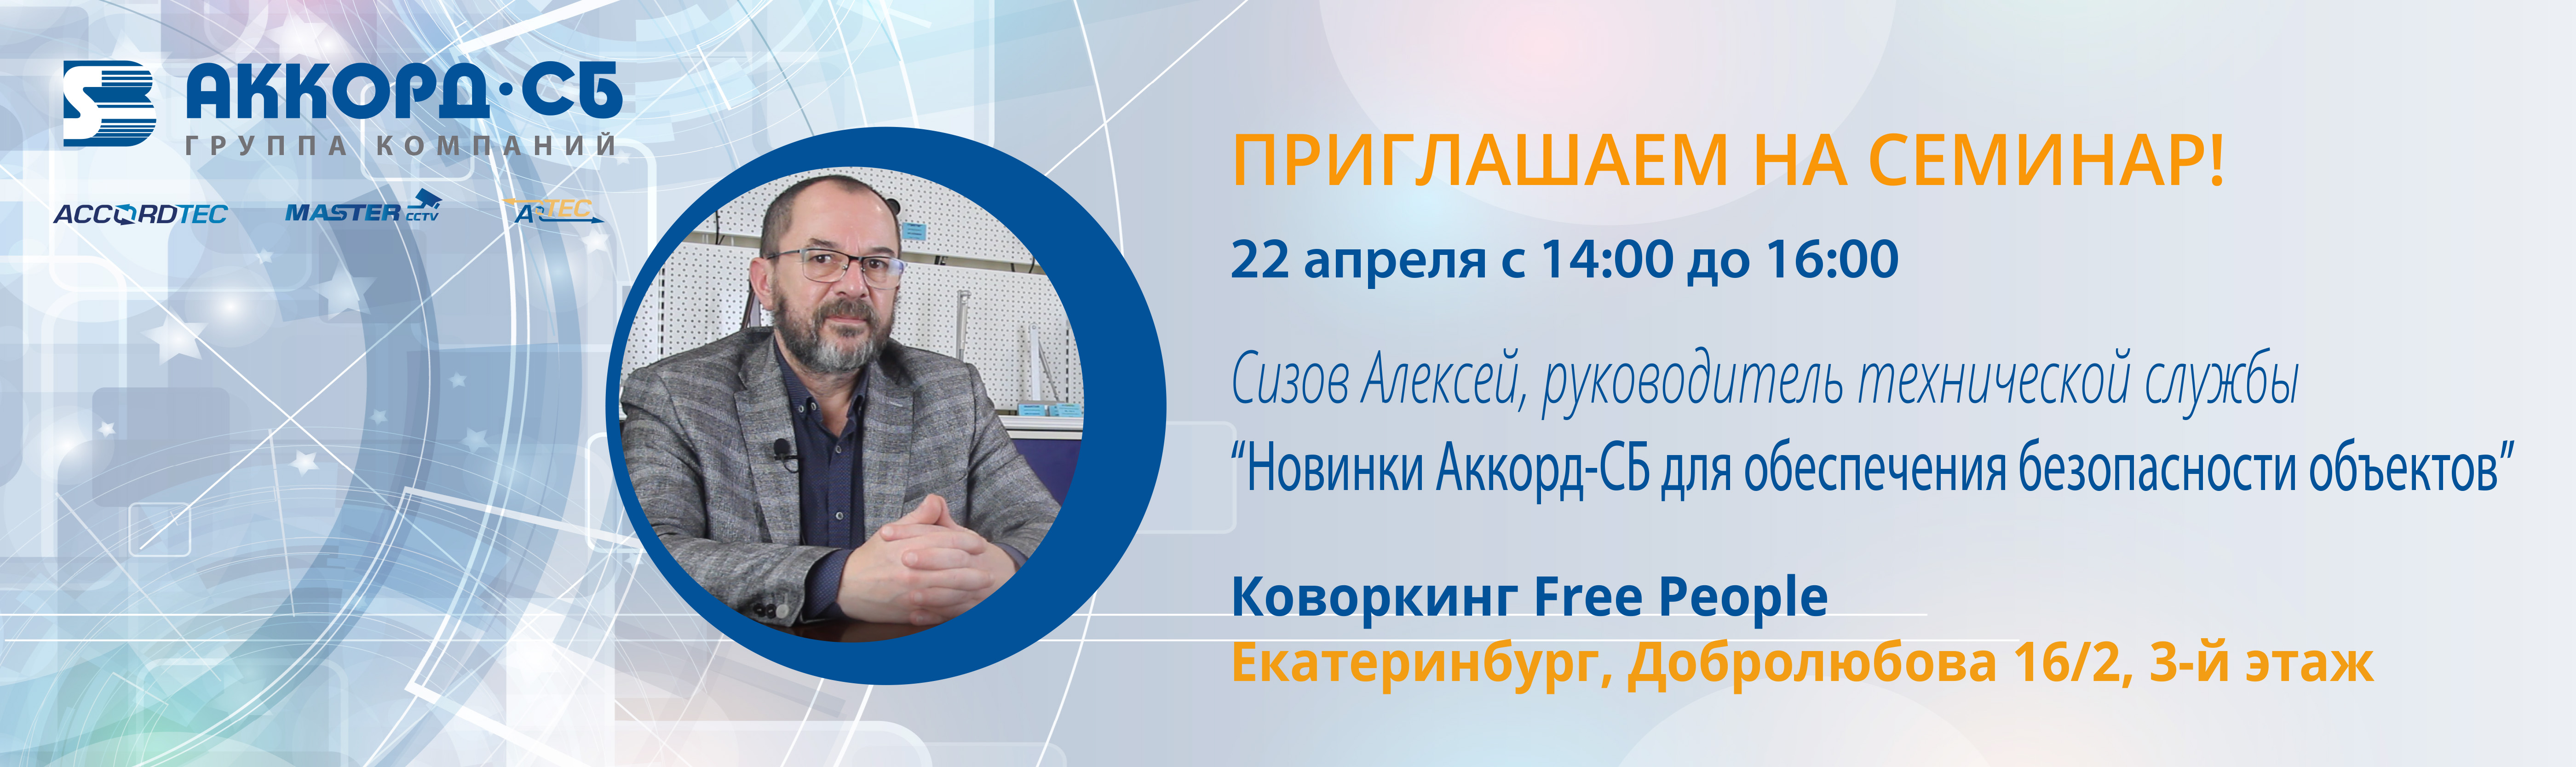 Приглашаем на семинар “Новинки Аккорд-СБ для обеспечения безопасности объектов” в Екатеринбурге!